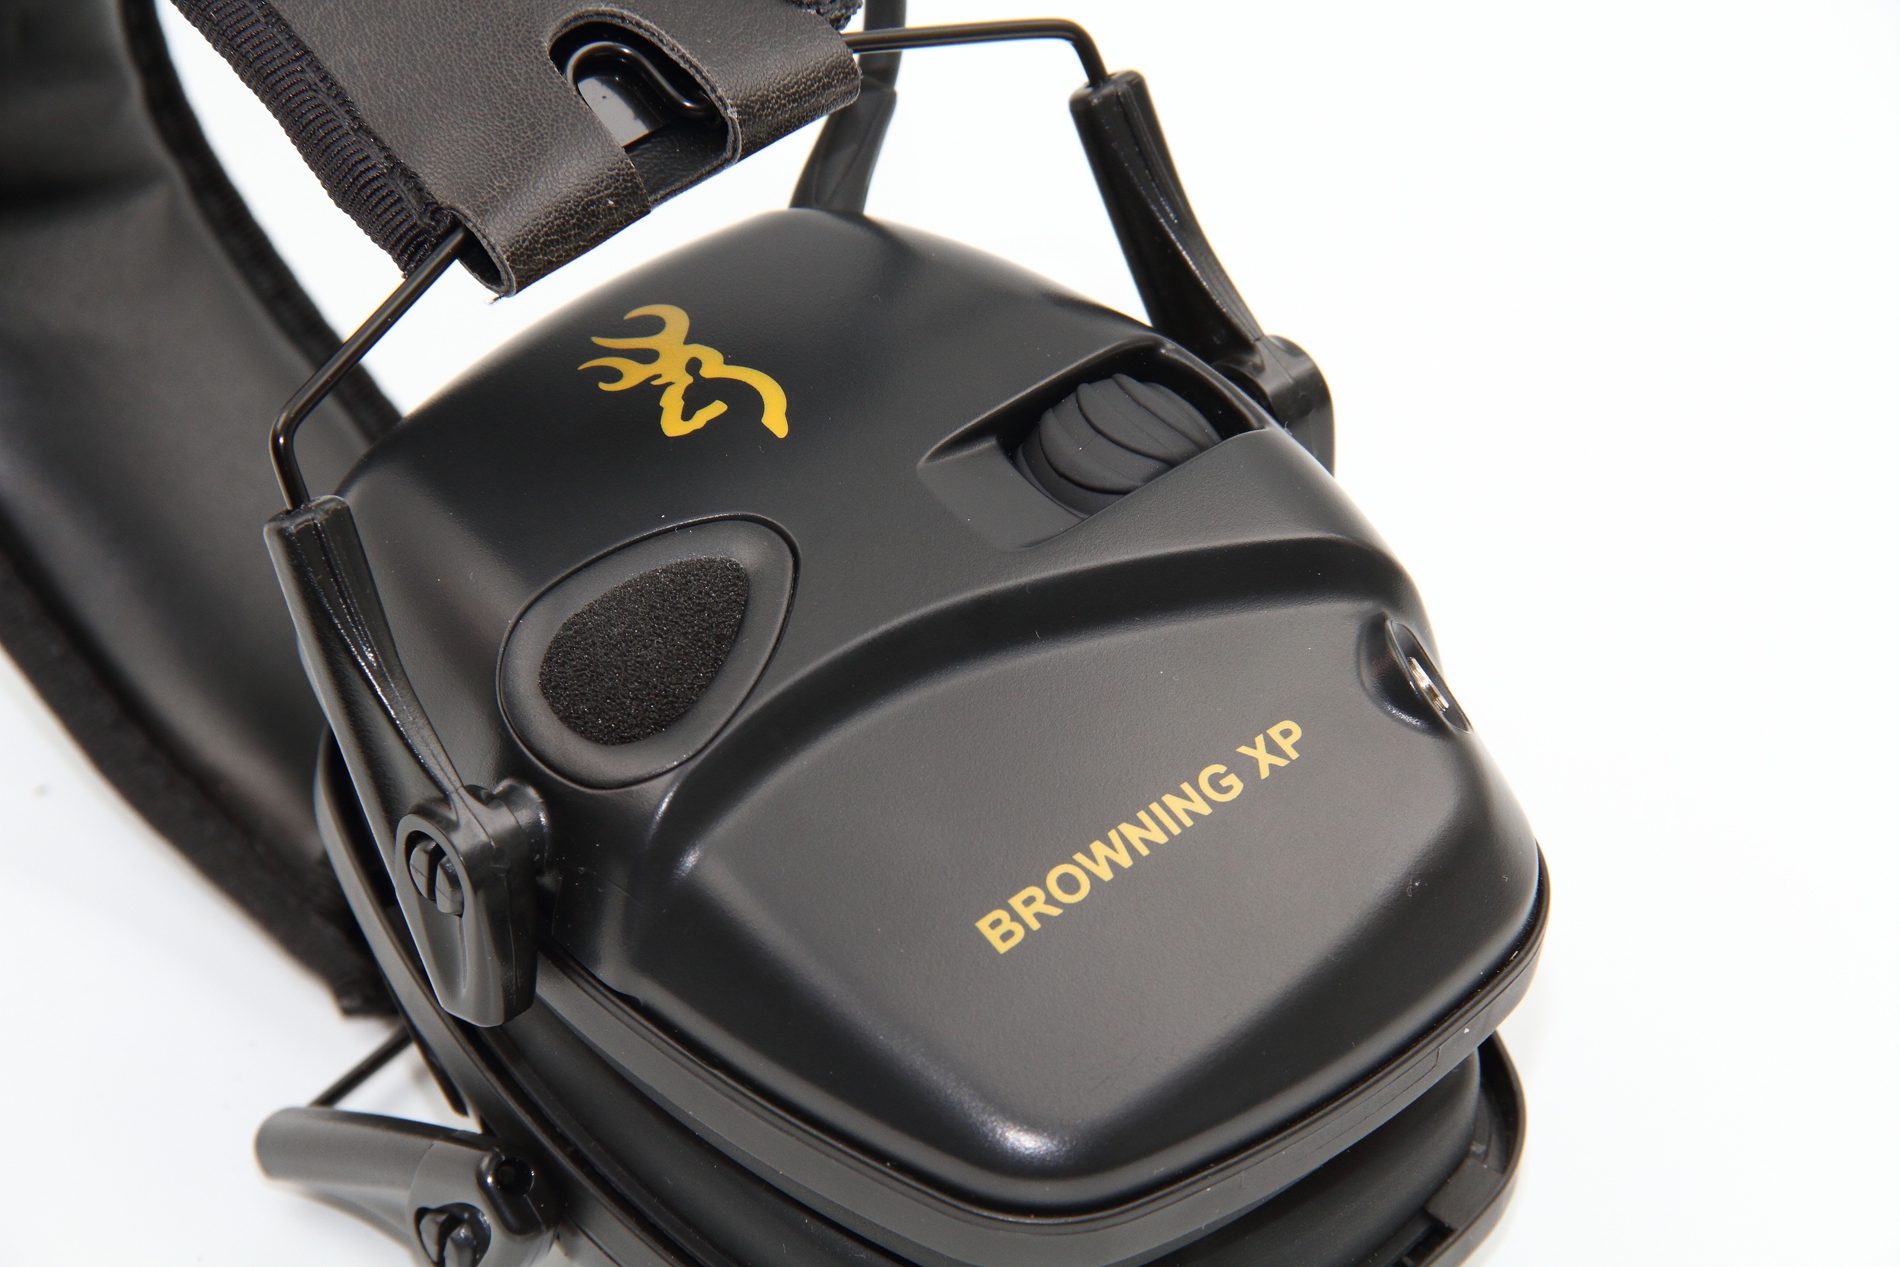 Test du casque de protection électronique XP de Browning